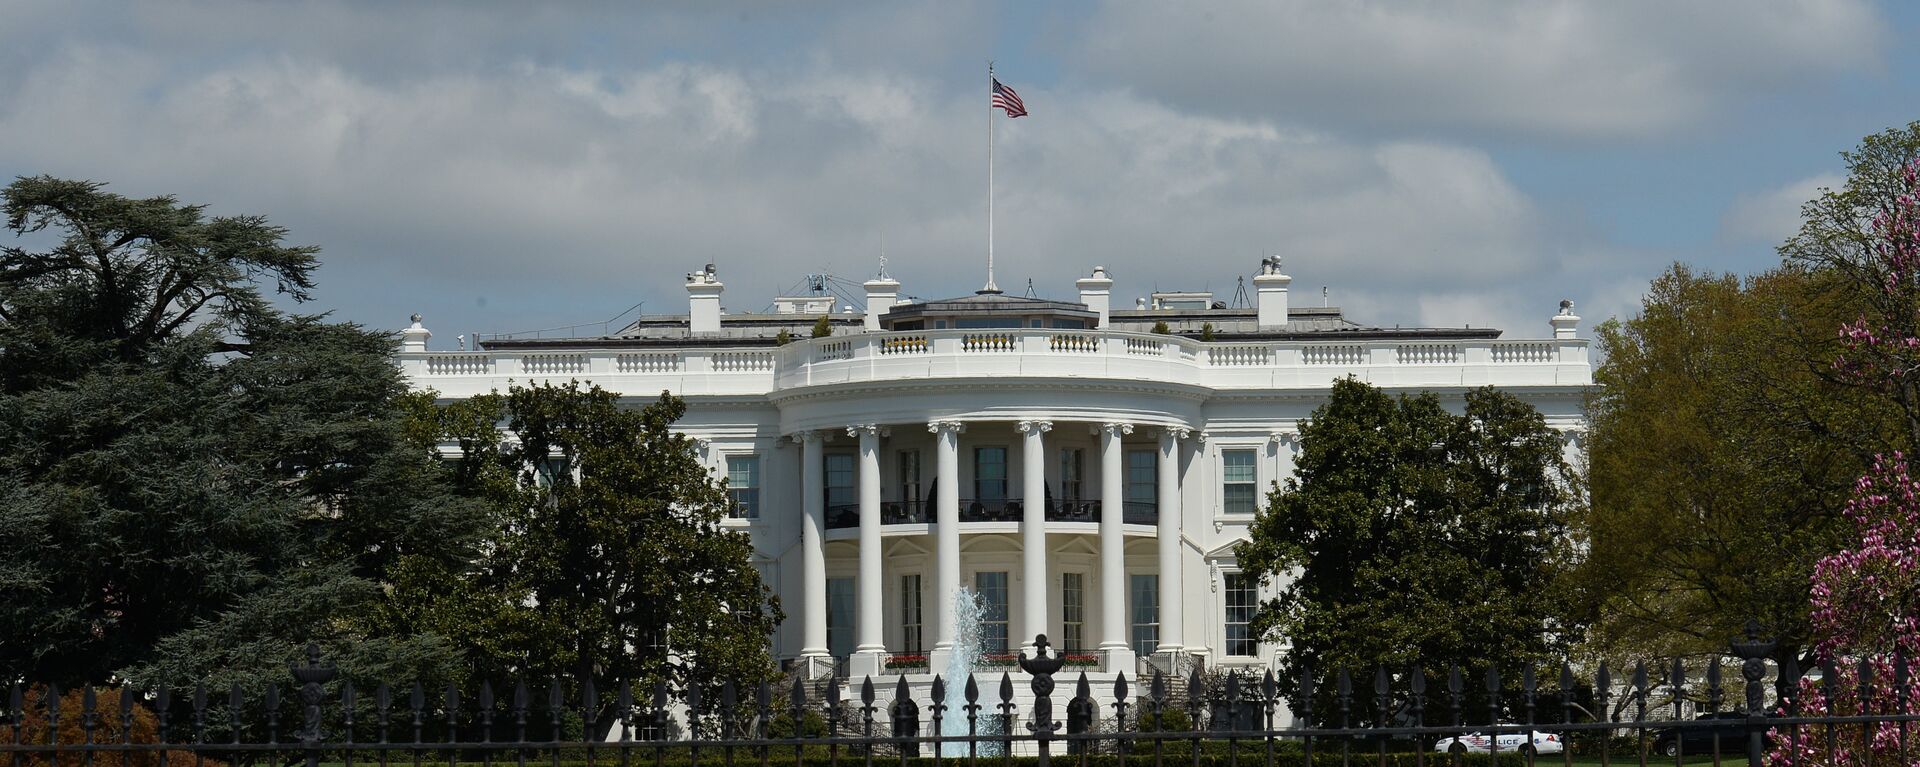 Официальная резиденция президента США - Белый дом в Вашингтоне - Sputnik Абхазия, 1920, 16.10.2022